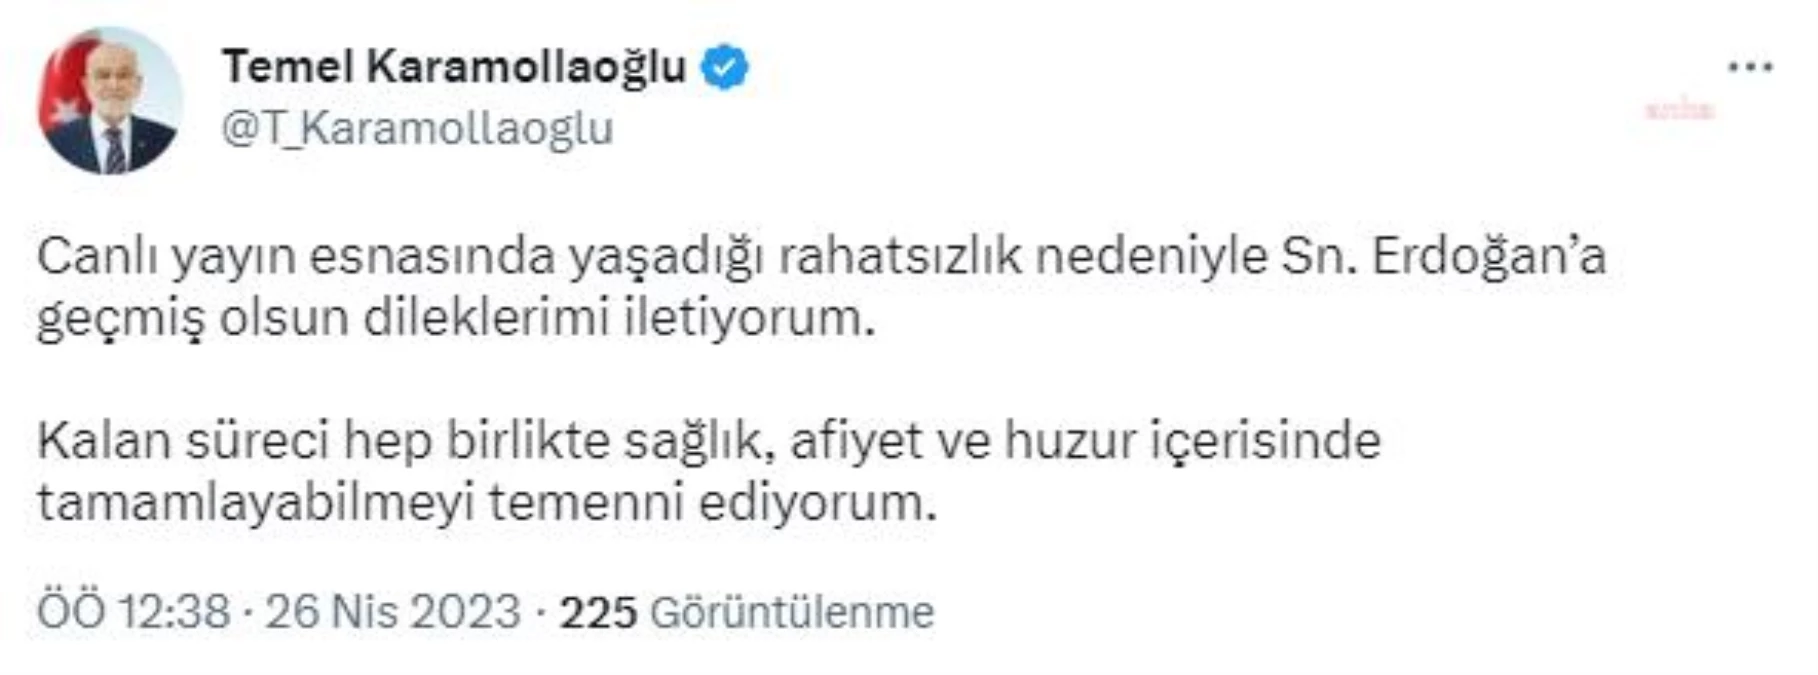 Karamollaoğlu: Canlı Yayın Esnasında Yaşadığı Rahatsızlık Nedeniyle Sayın Erdoğan'a Geçmiş Olsun Dileklerimi İletiyorum.